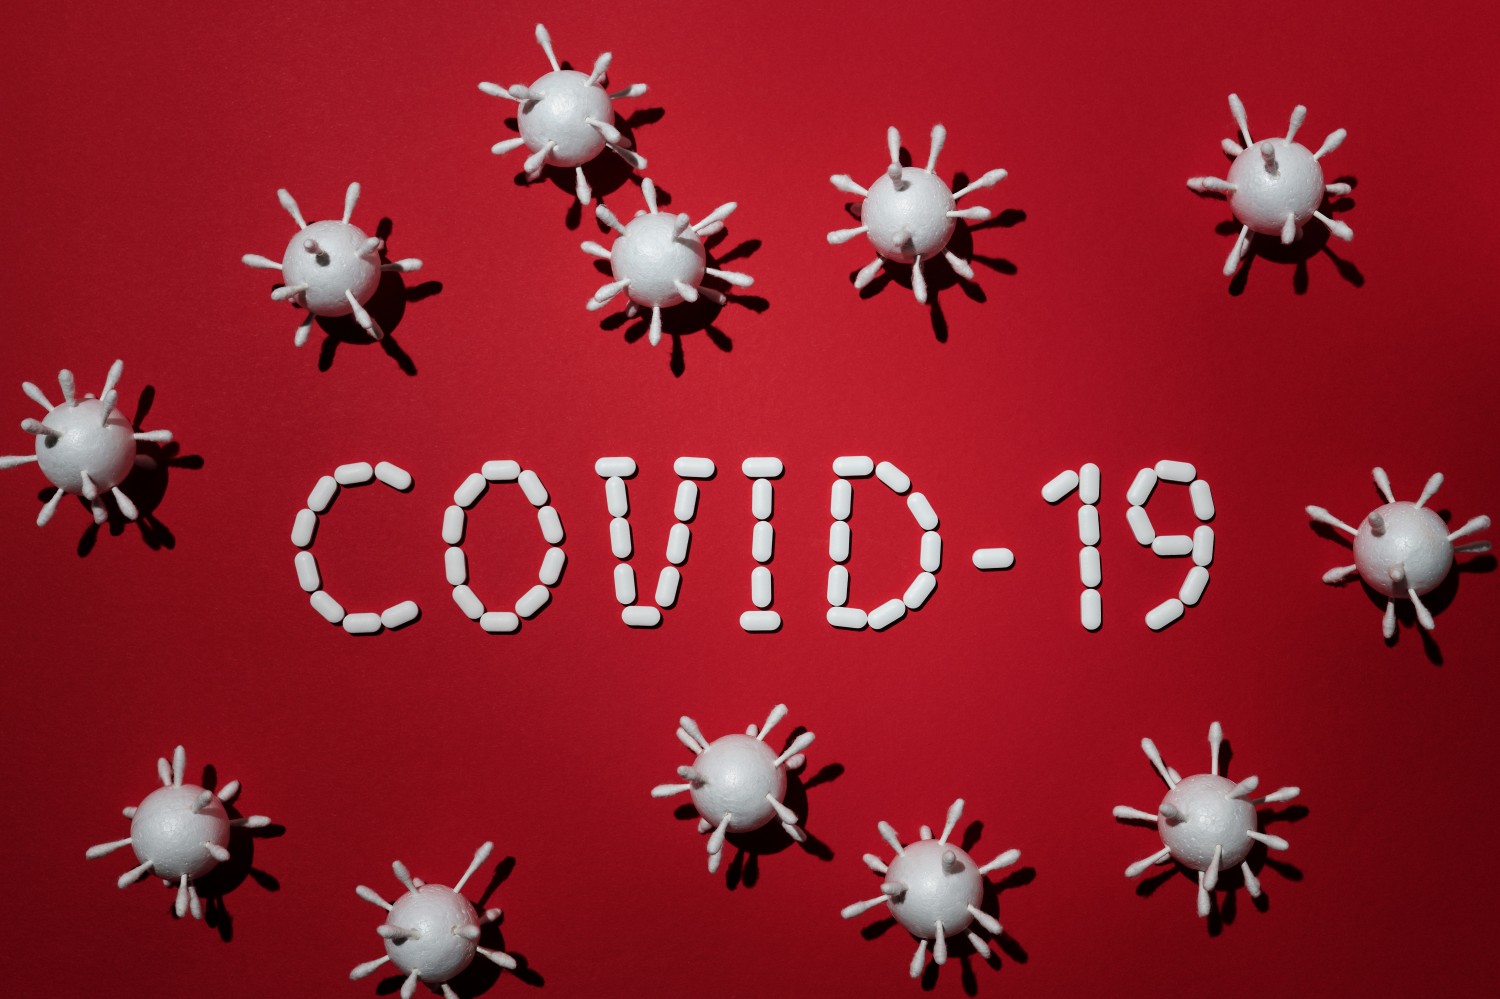 Koronavírus - 7587 az új fertőzött, elhunyt 249 beteg